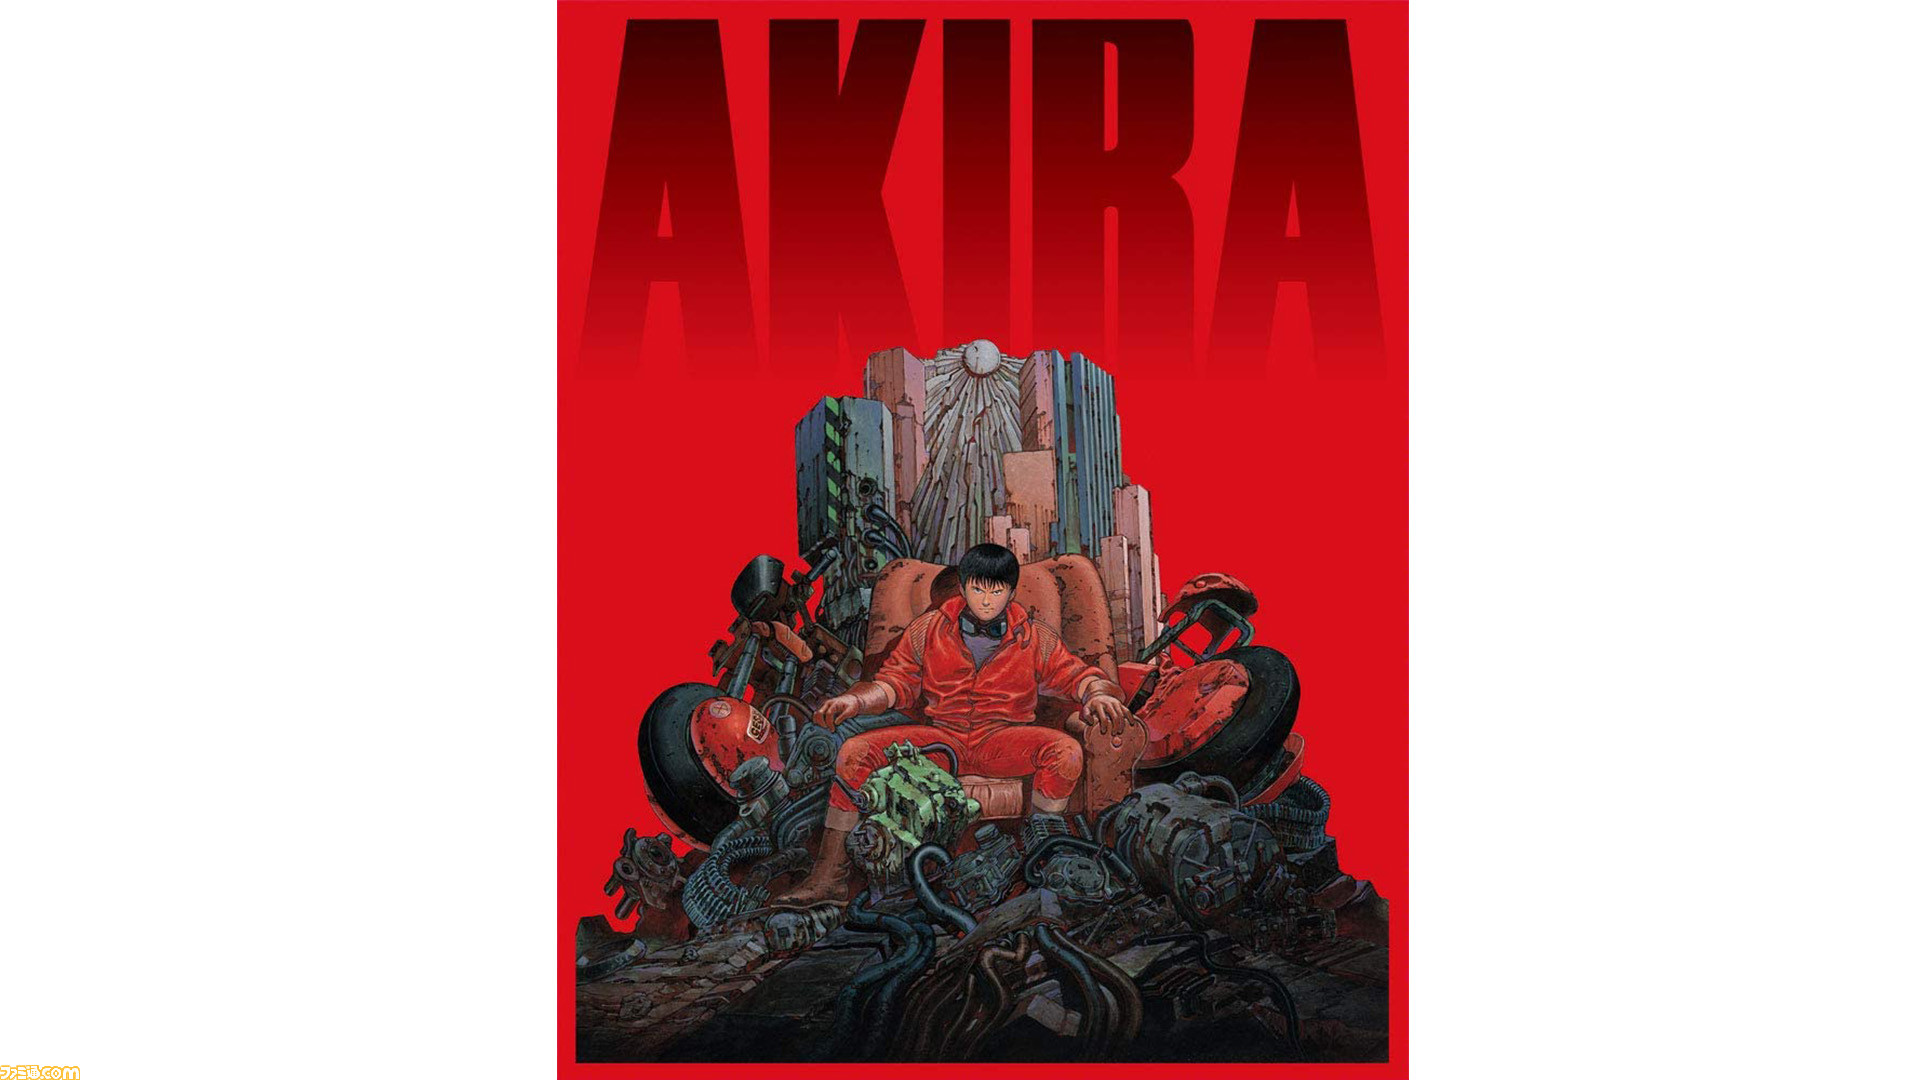 『AKIRA』大友克洋氏が新作マンガを制作中「もう少ししたら何処かに載るかもしれません」